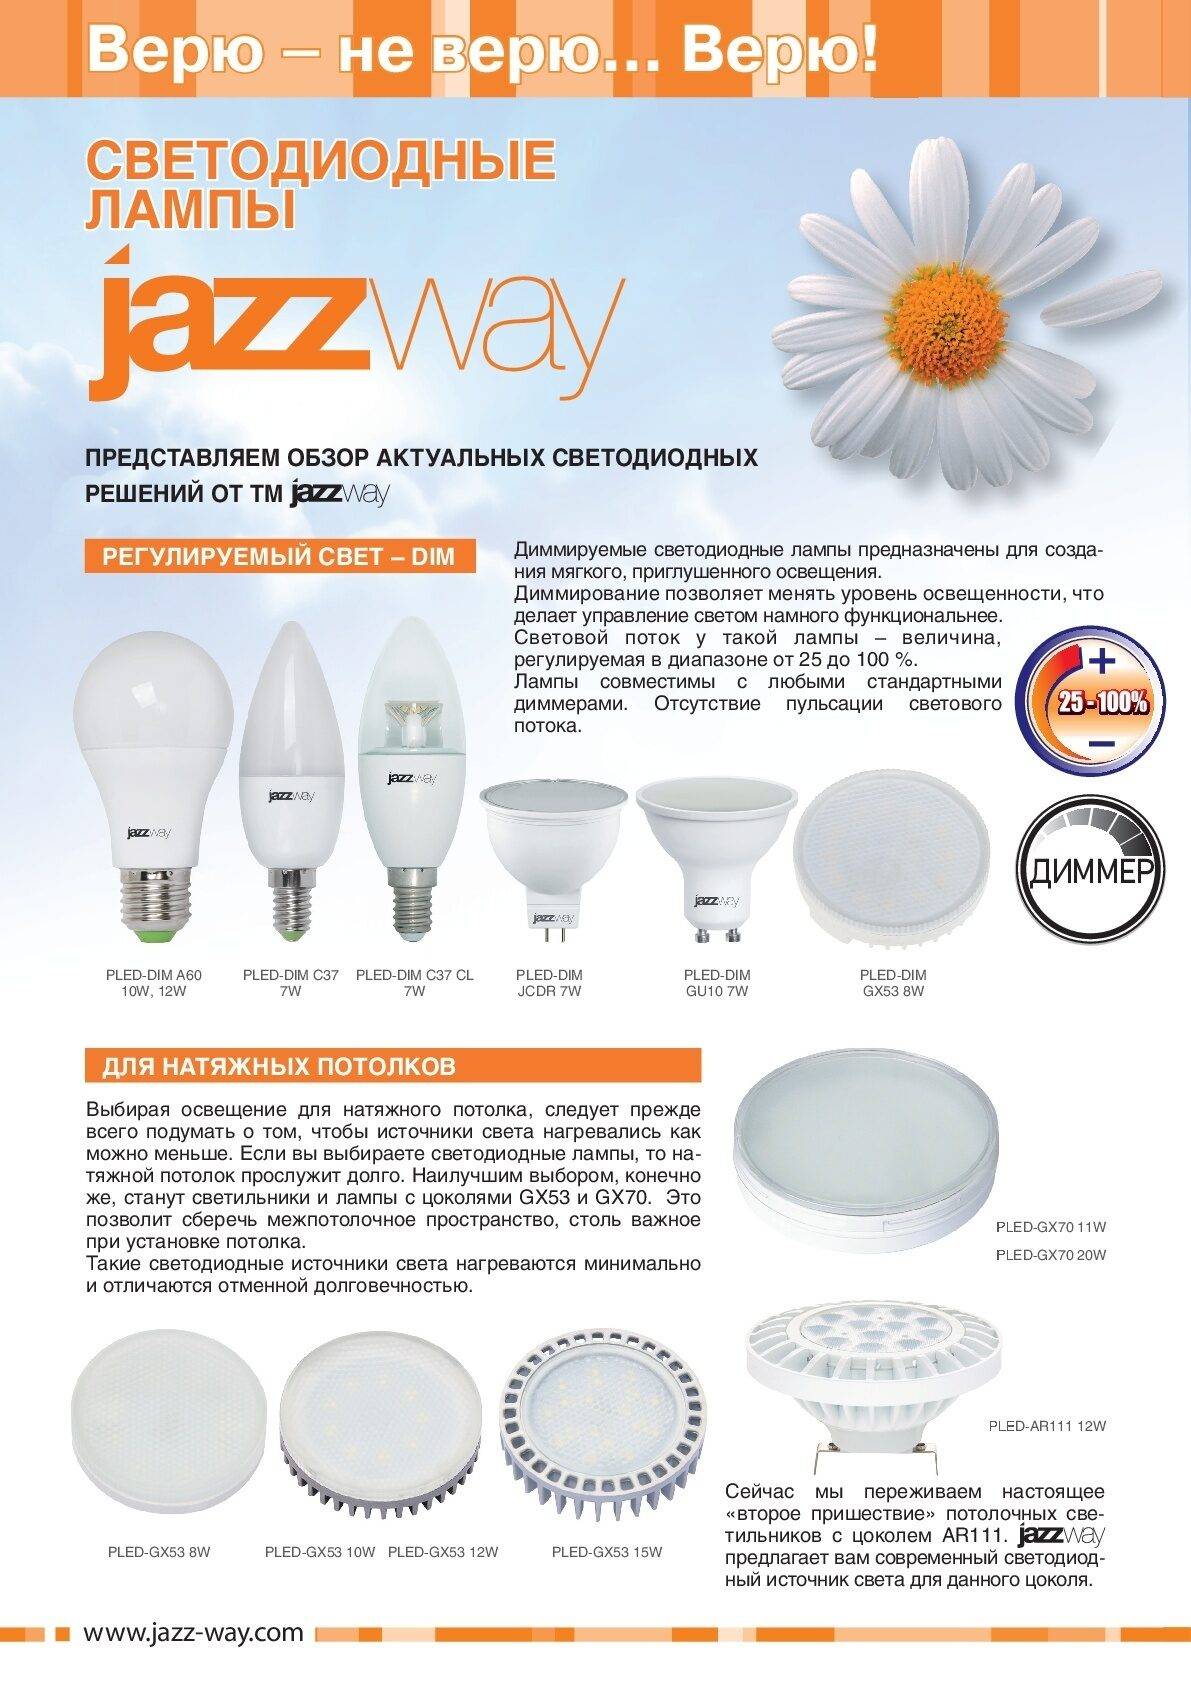 Jazzway - производители светодиодных ламп - led свет